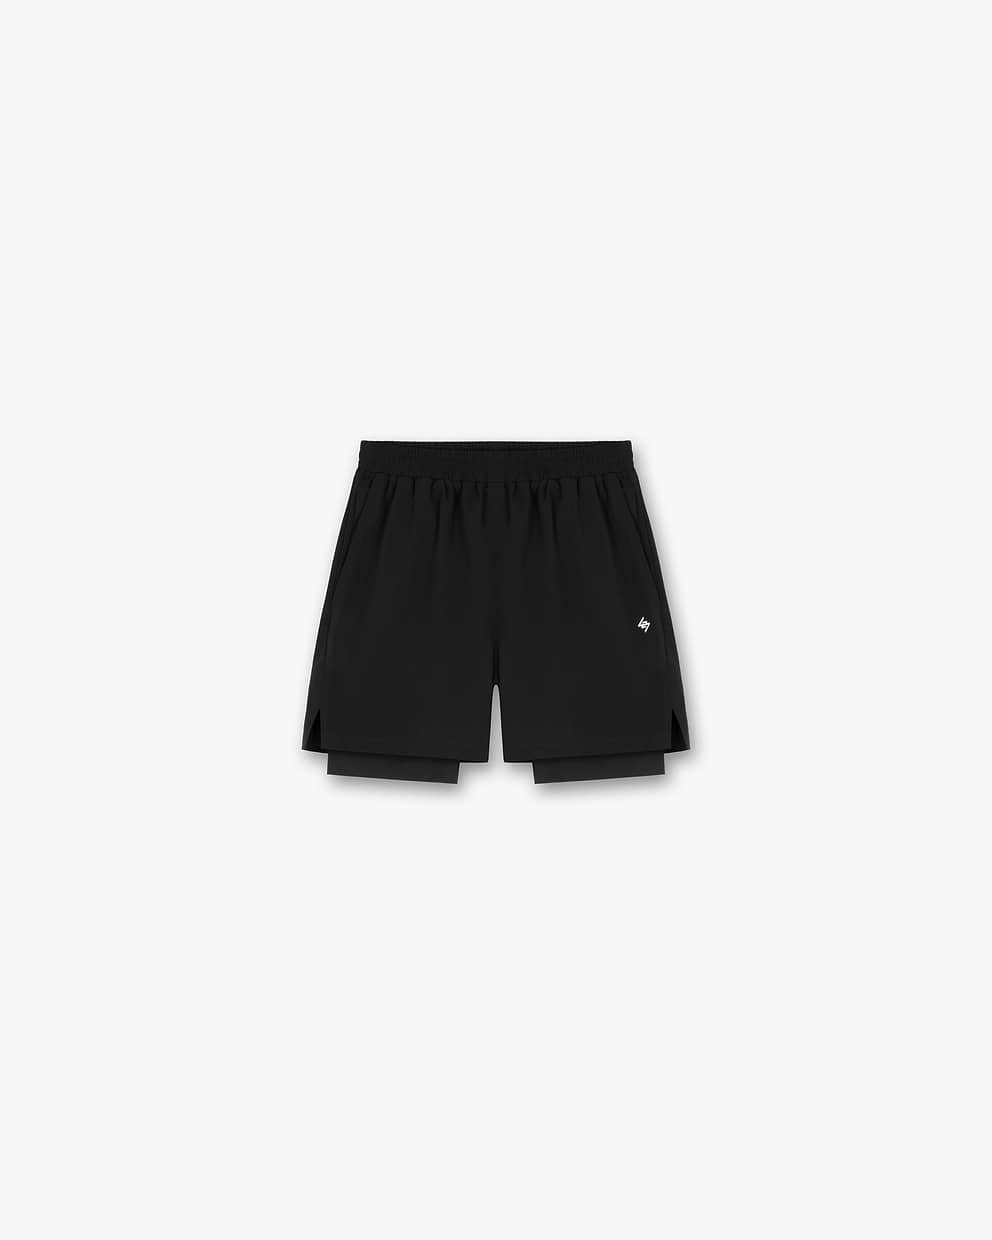 247 2-In-1 Shorts - Black